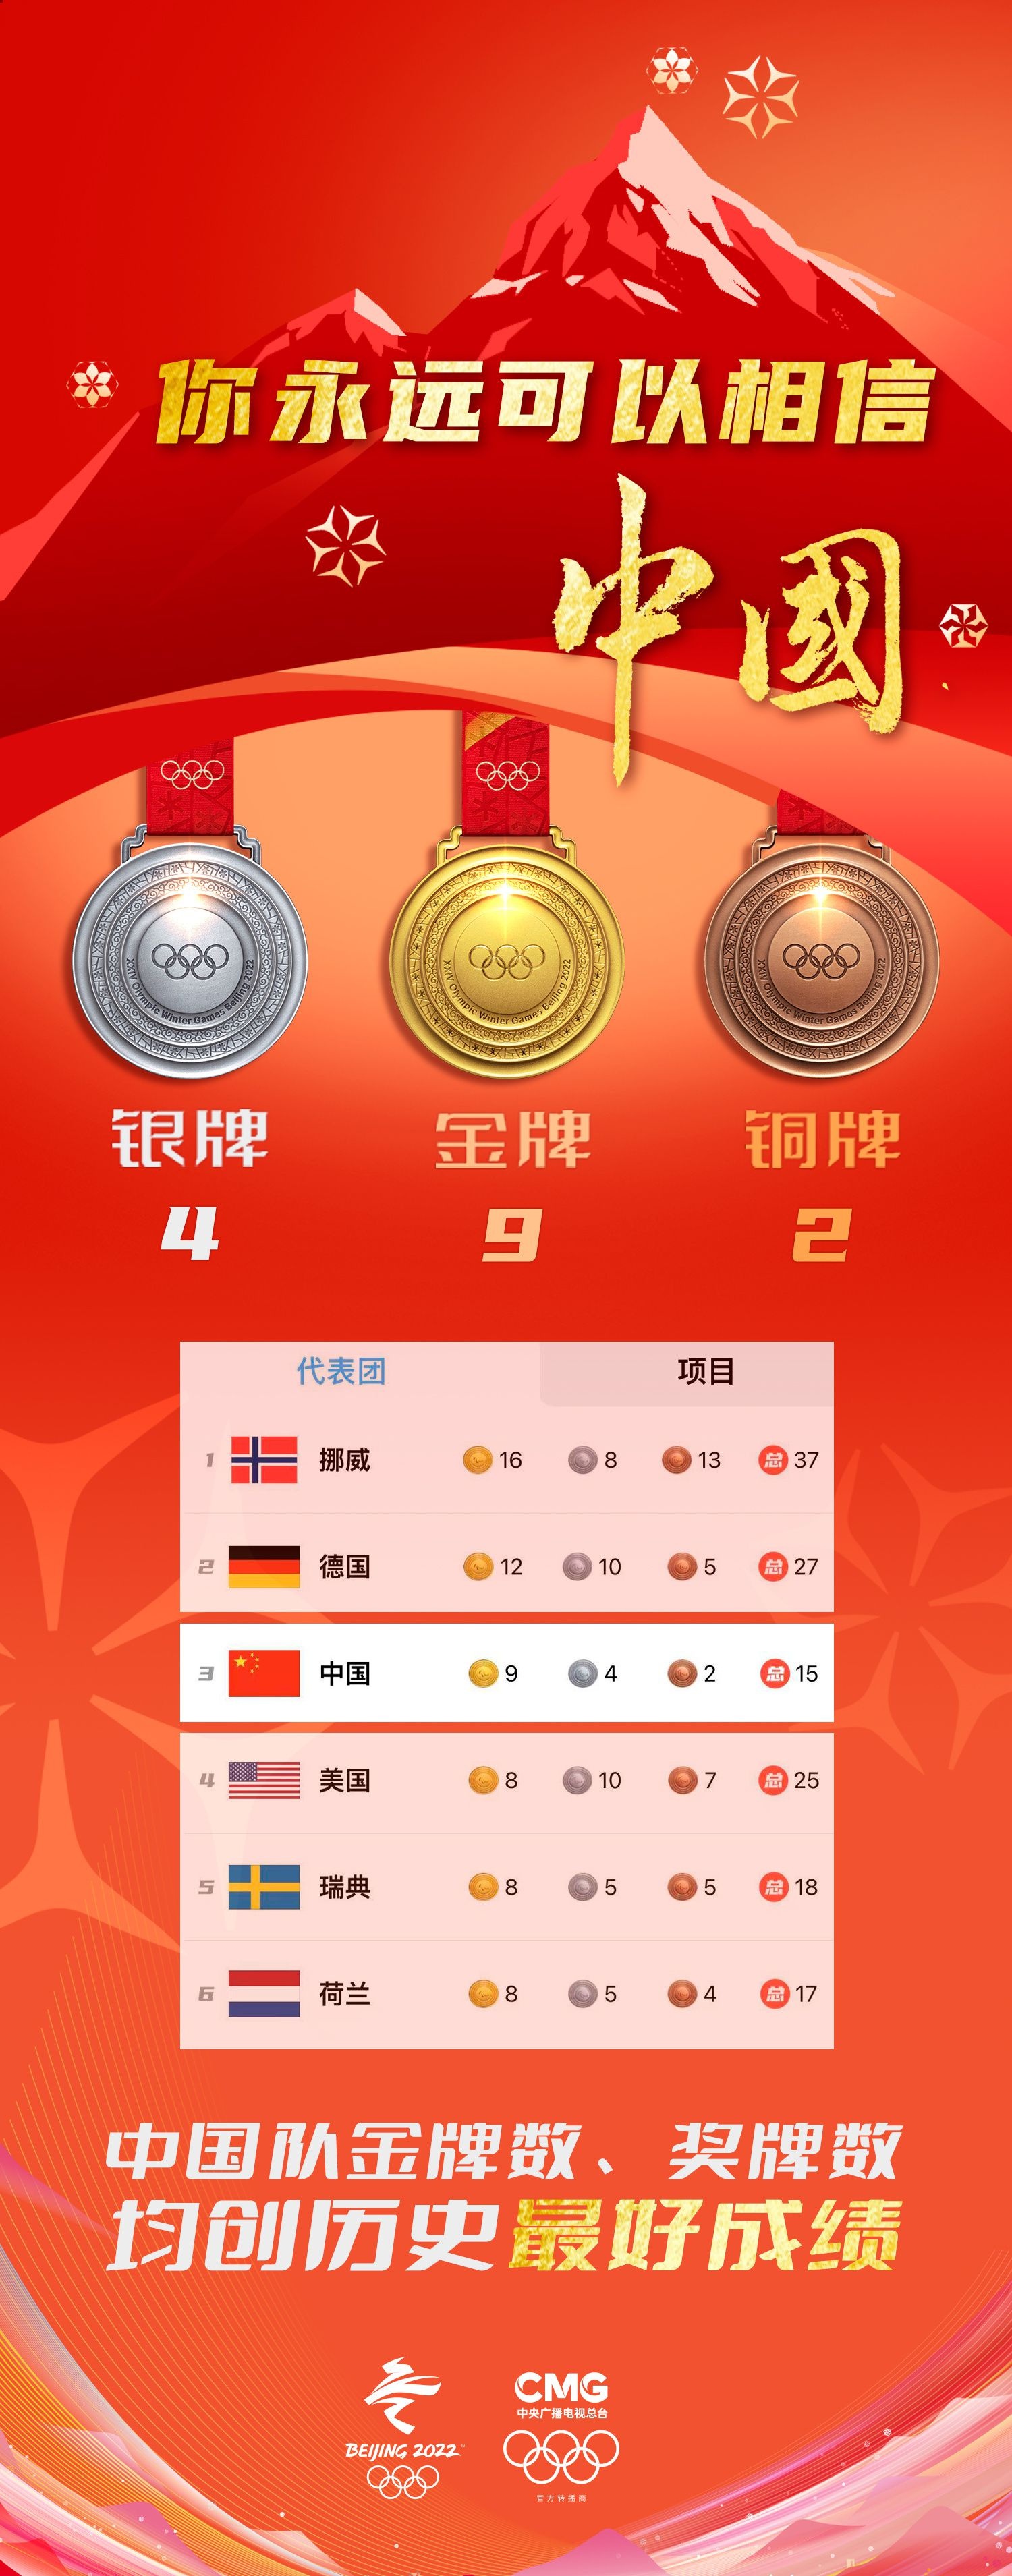 中国队位列奖牌榜第三位！金牌数、奖牌数均创历史最好成绩